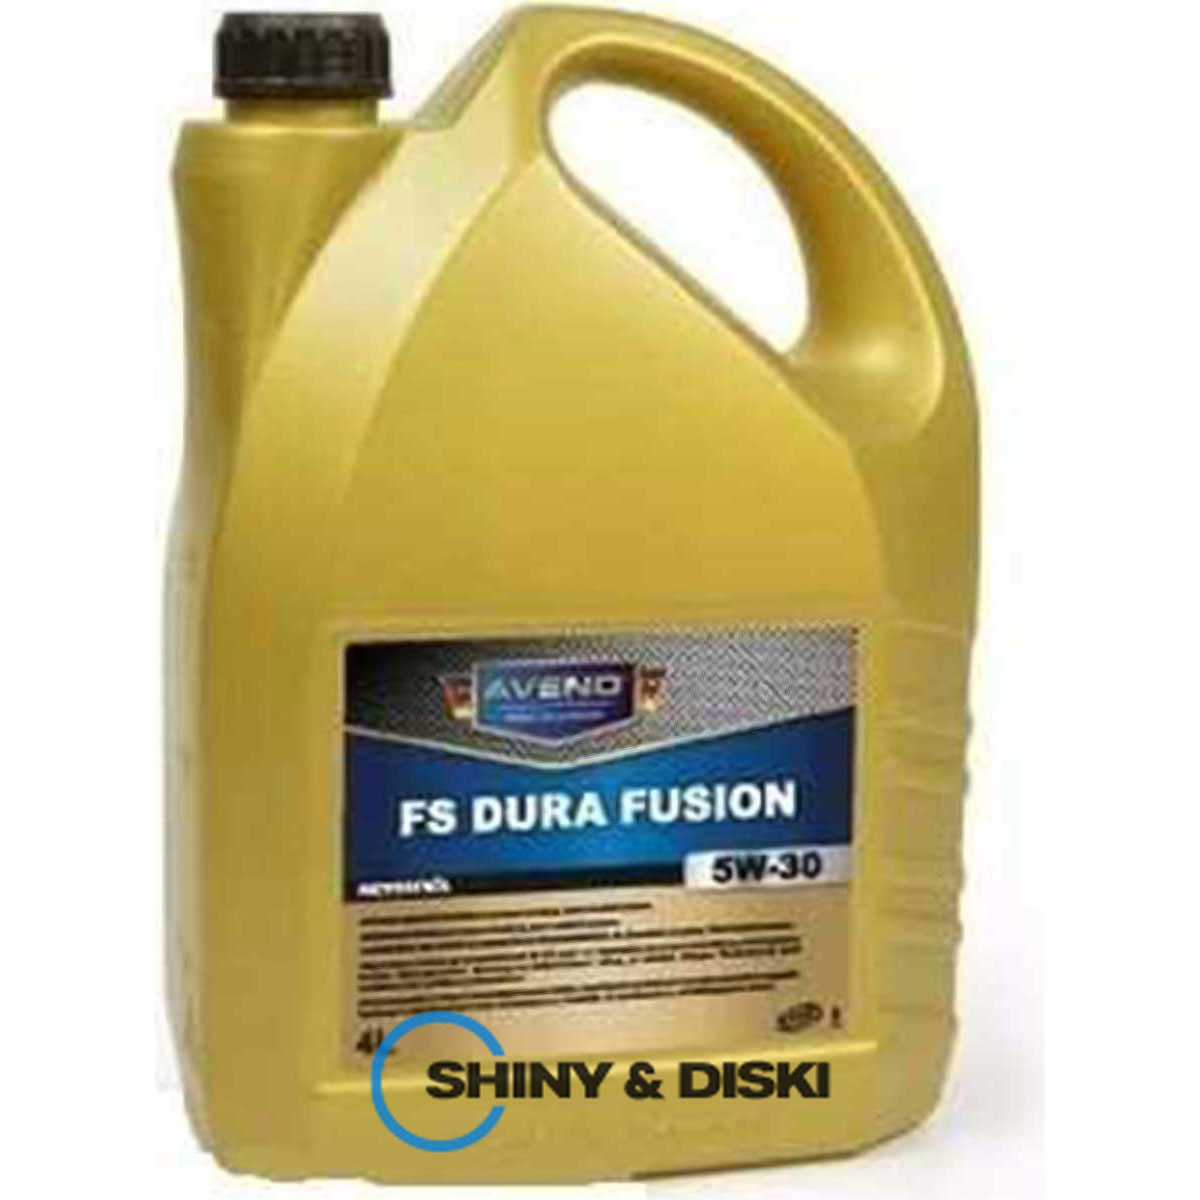 aveno fs dura fusion 5w-30 (4л)